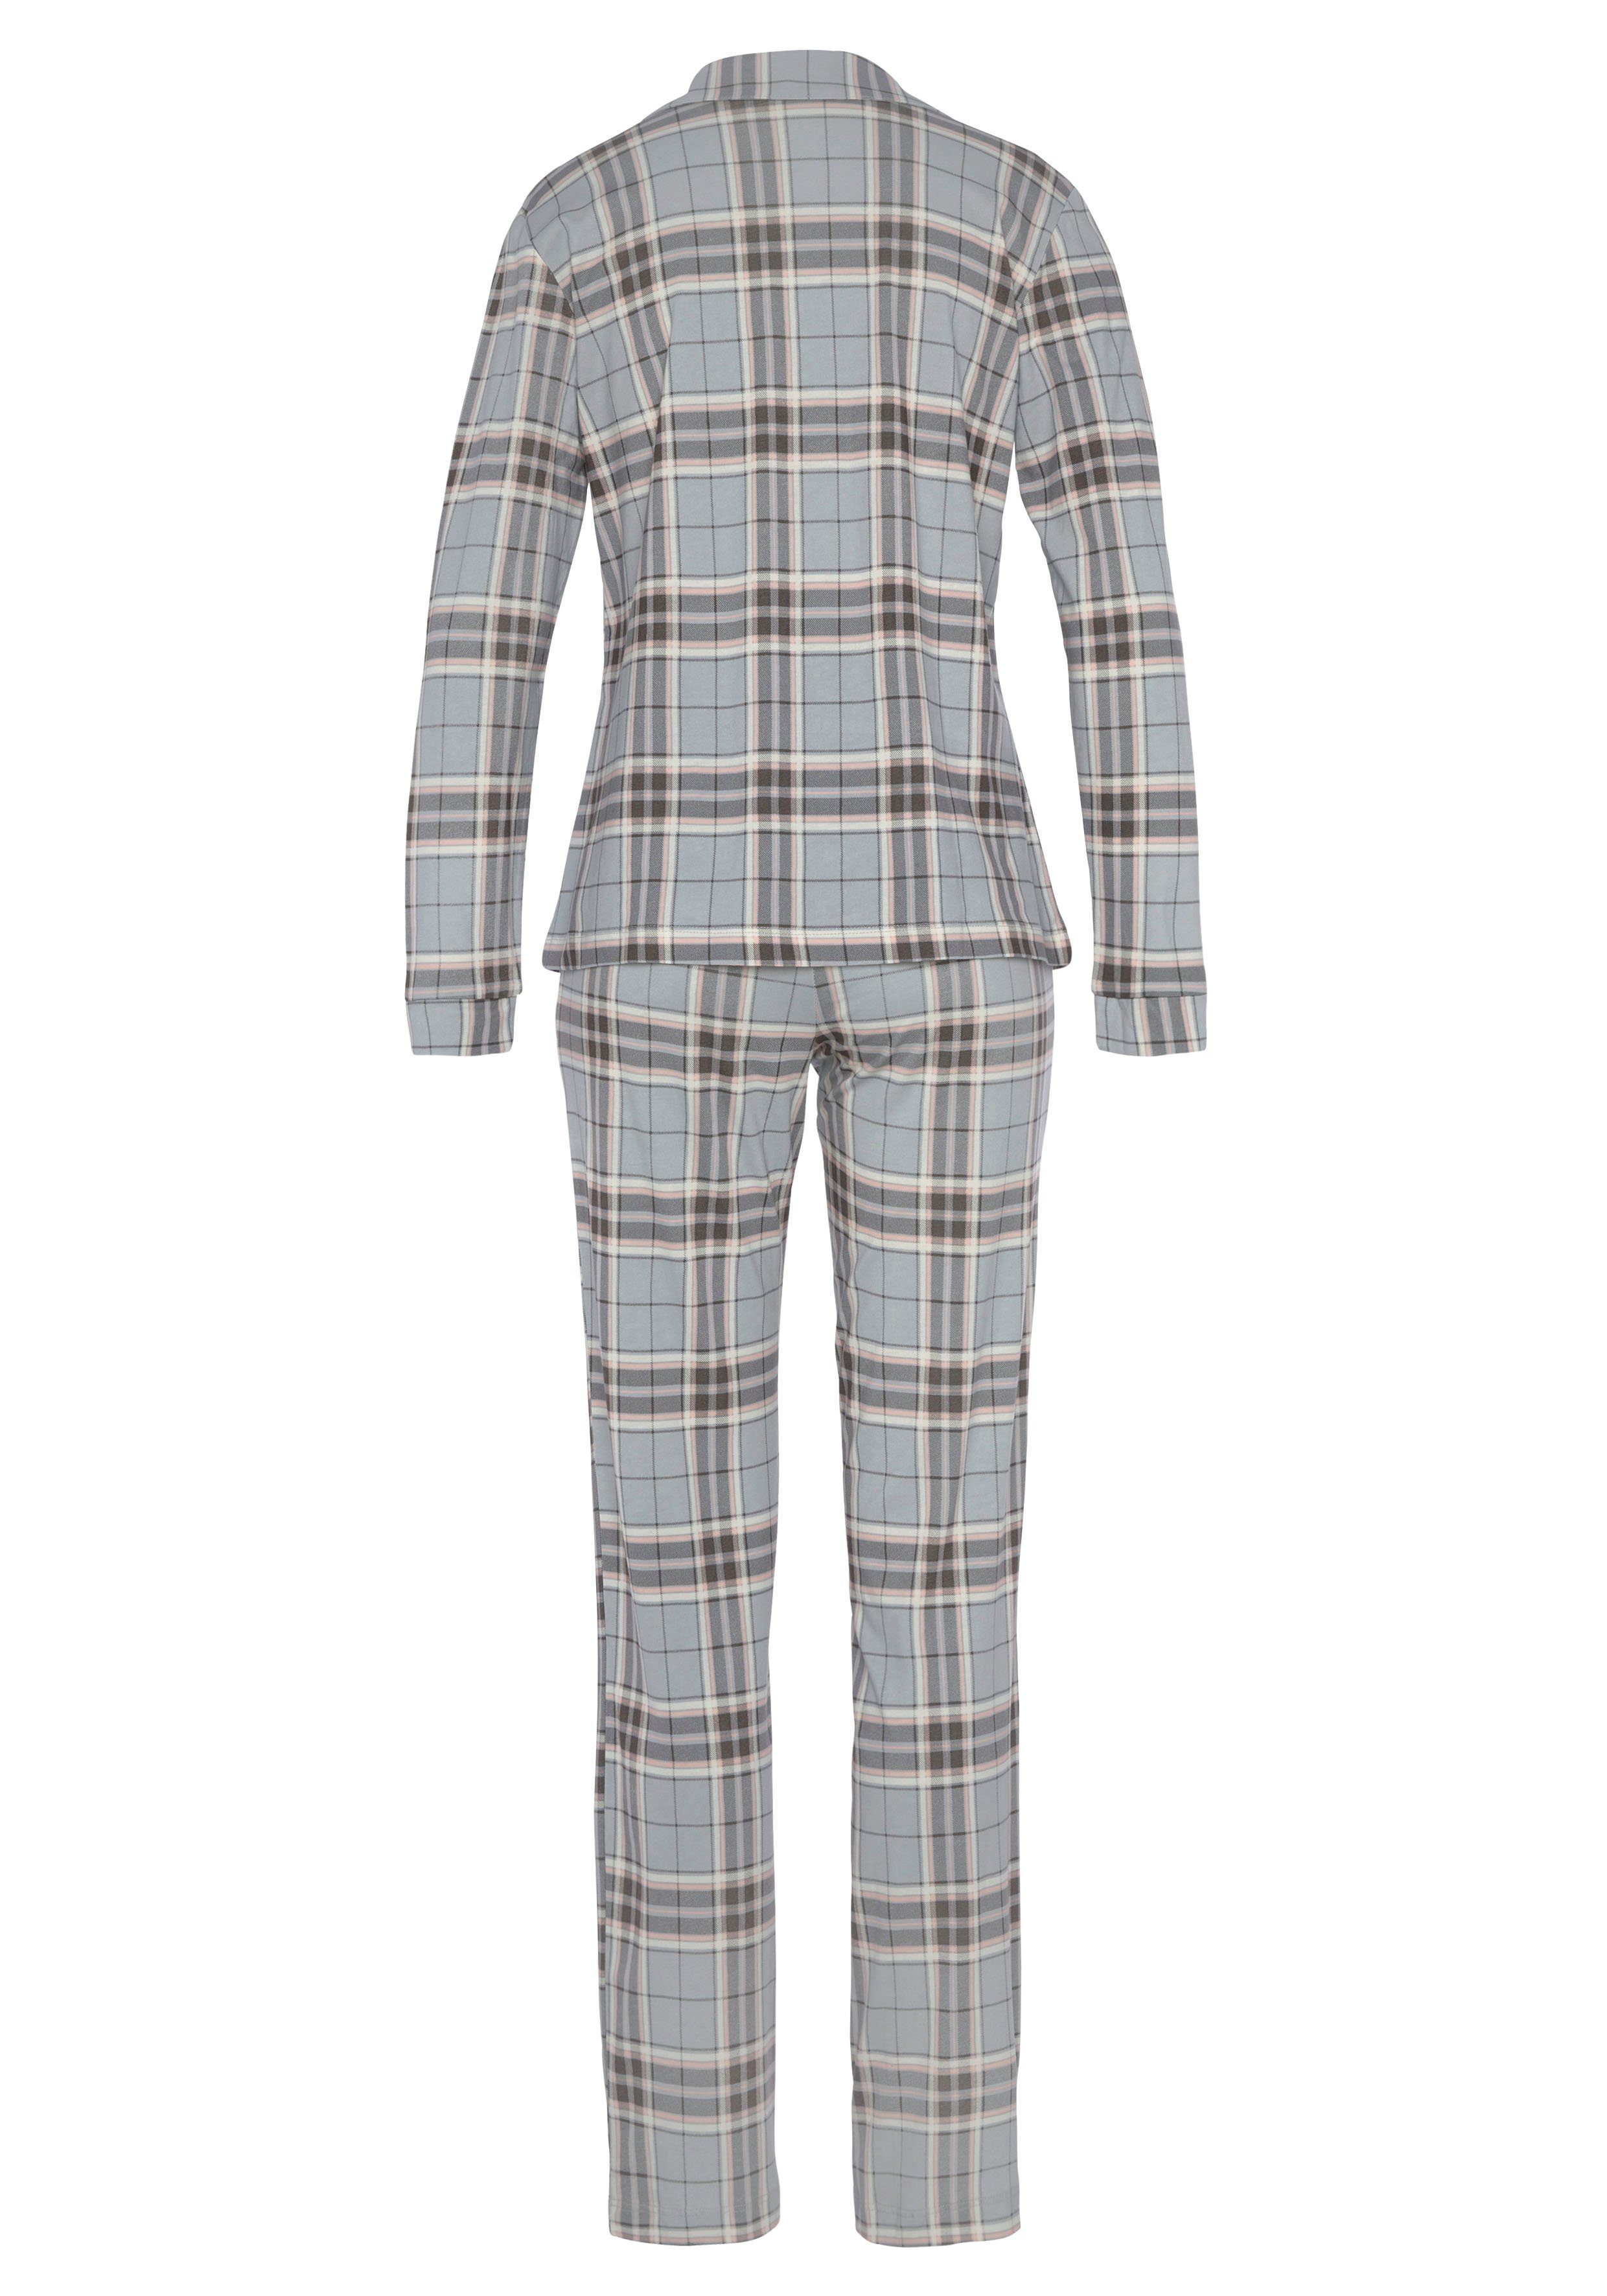 Pyjama grau-kariert s.Oliver mit tlg) (2 Muster schönem